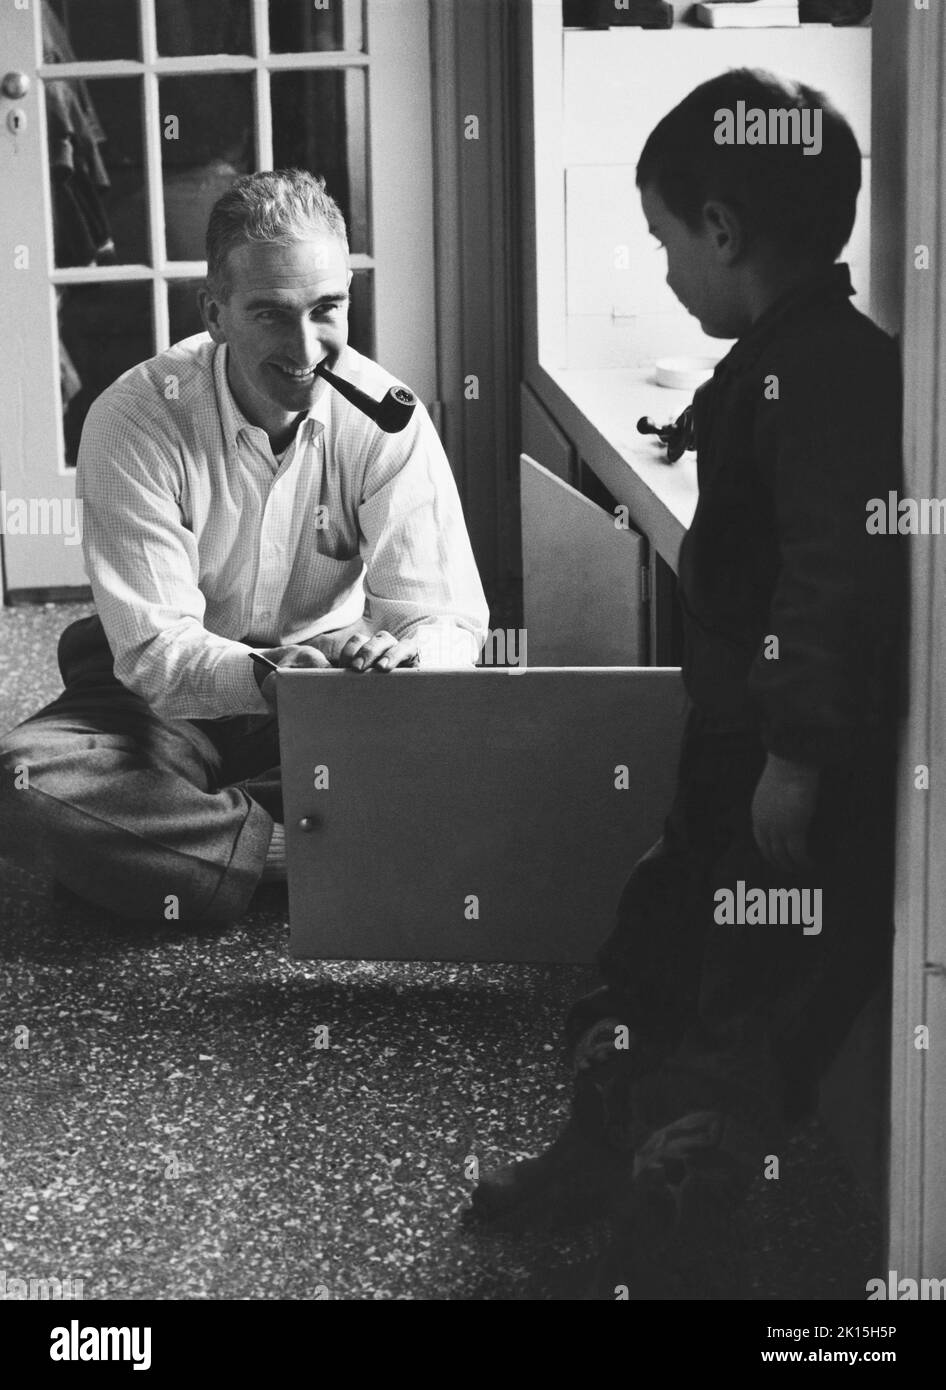 Ein Pfeifenraucher Vater öffnet eine Schranktür, während sein Sohn zuschaut. Ca. 1960. Stockfoto